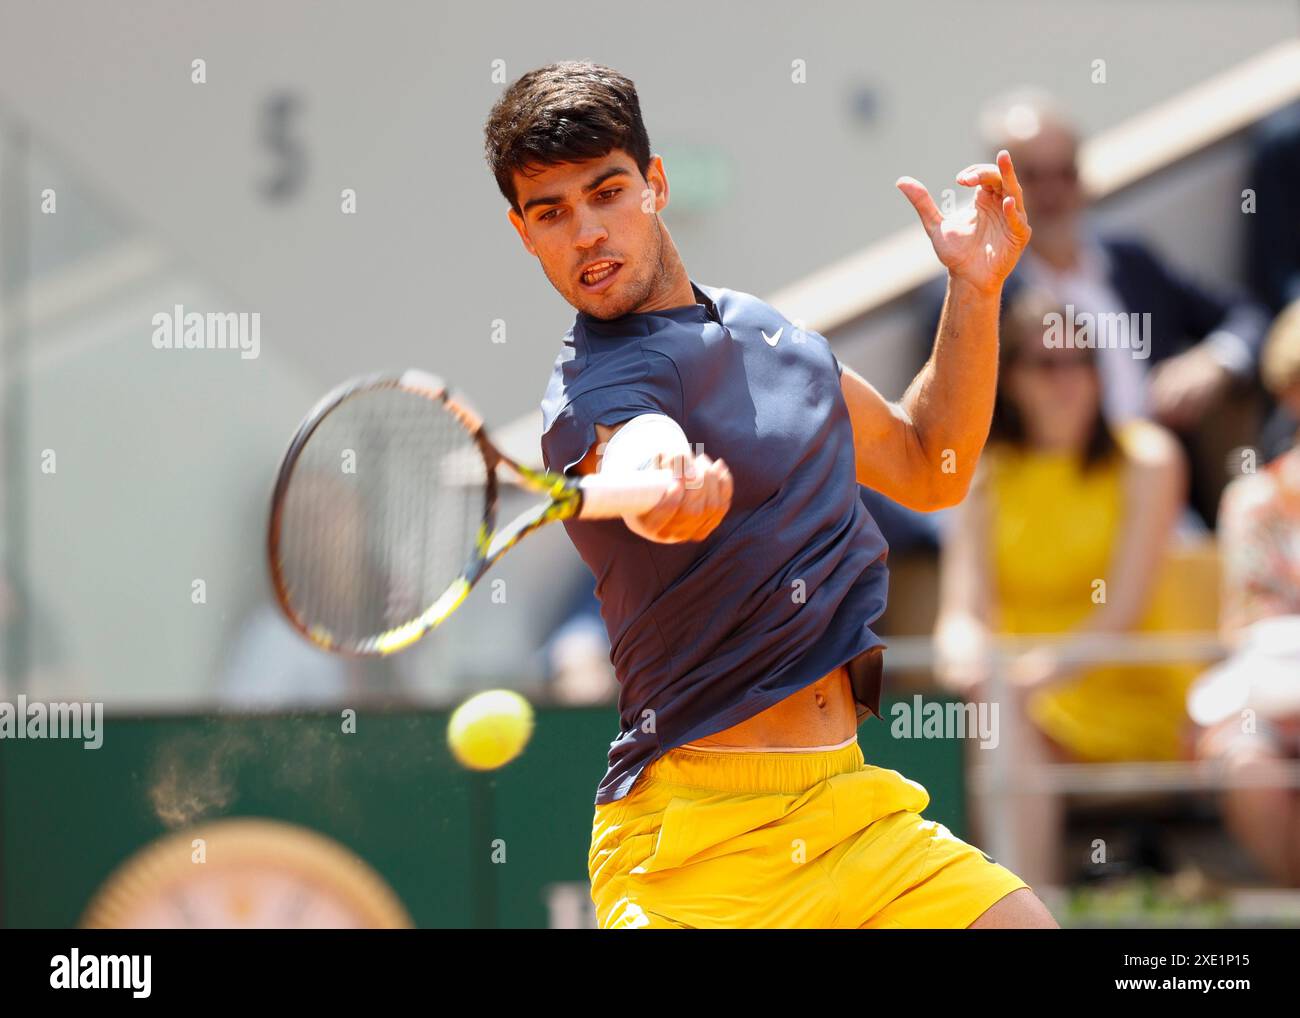 Joueur de tennis espagnol Carlos Alcaraz en action à l'Open de France, Roland Garros, Paris, France. Banque D'Images